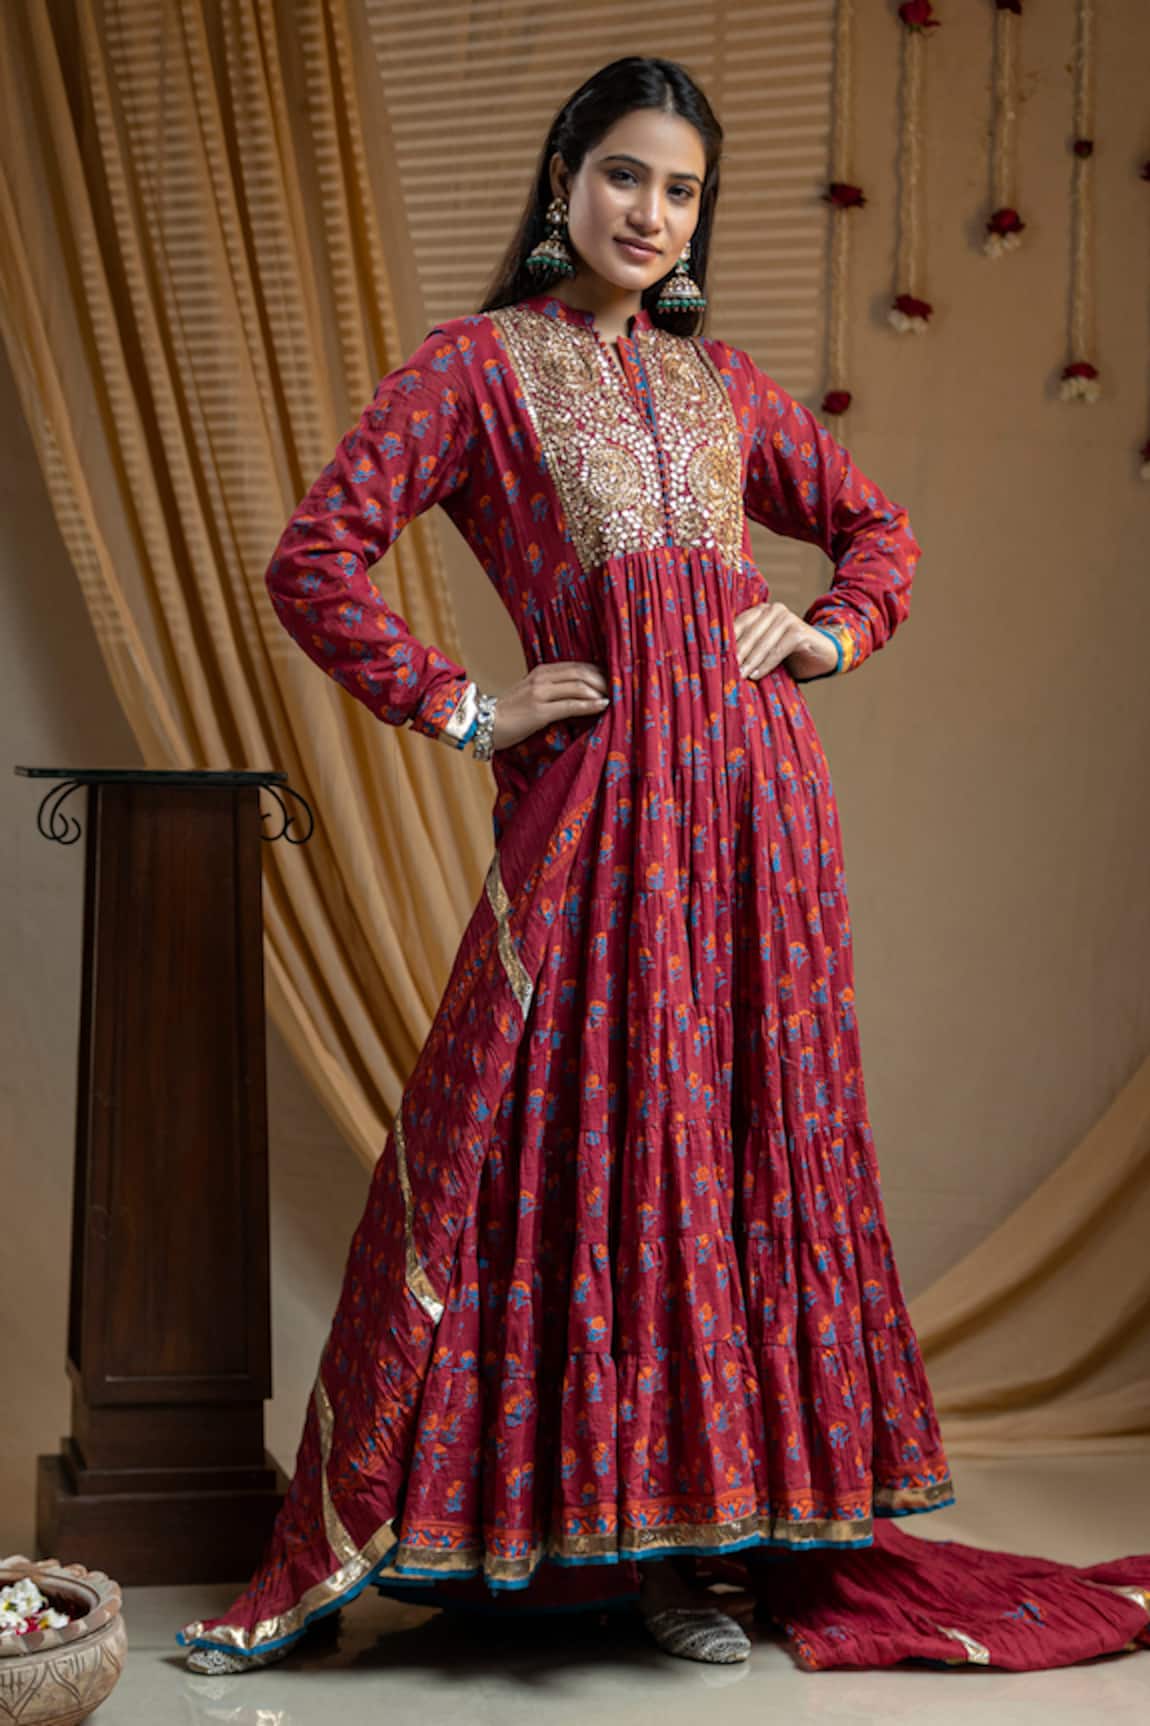 Nazar by Indu Indian Fashion designer online store features flowly ...